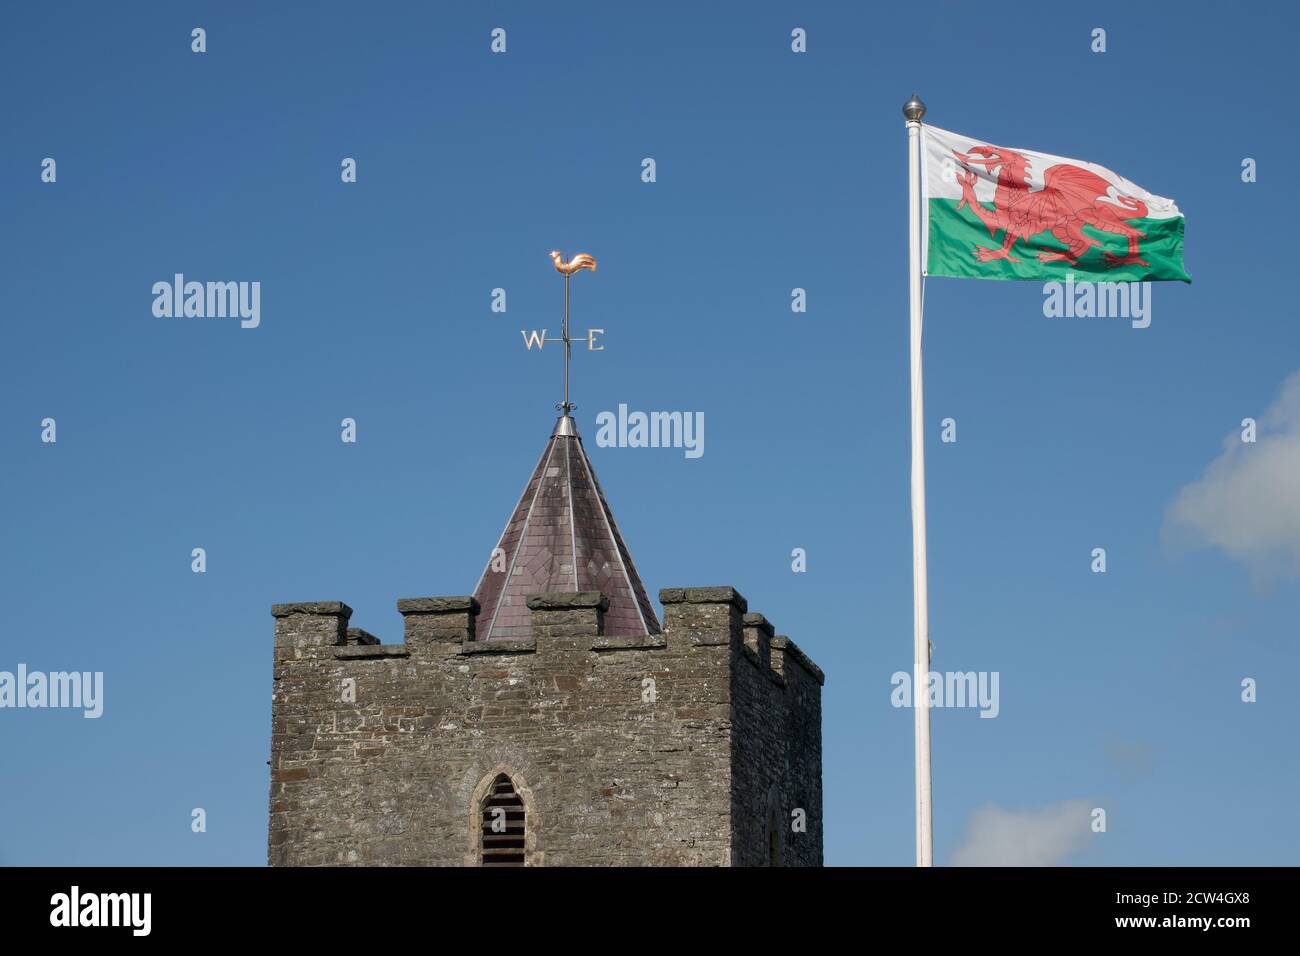 La bandiera gallese del Drago vola con orgoglio sulla chiesa di St. Hilays, Llanilar, Galles centrale Foto Stock